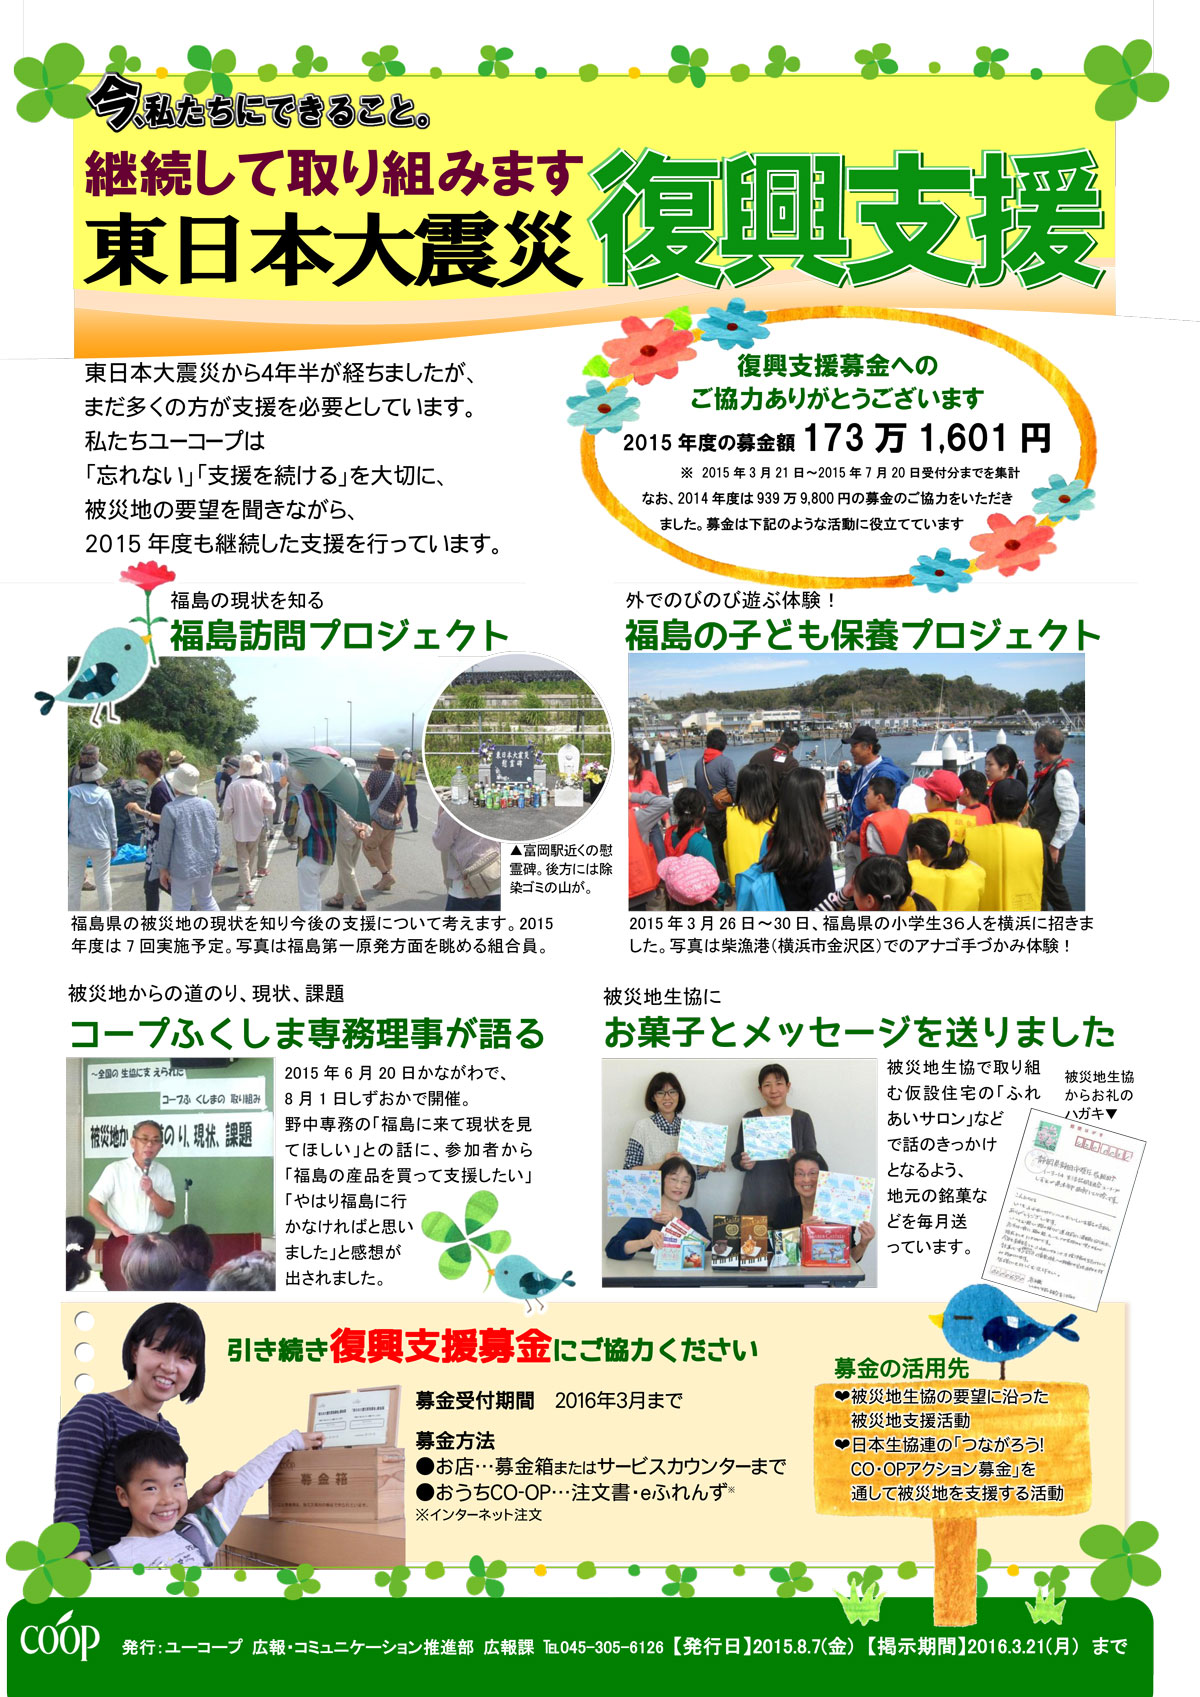 http://www.ucoop.or.jp/hiroba/report/files/150804bokin.jpg